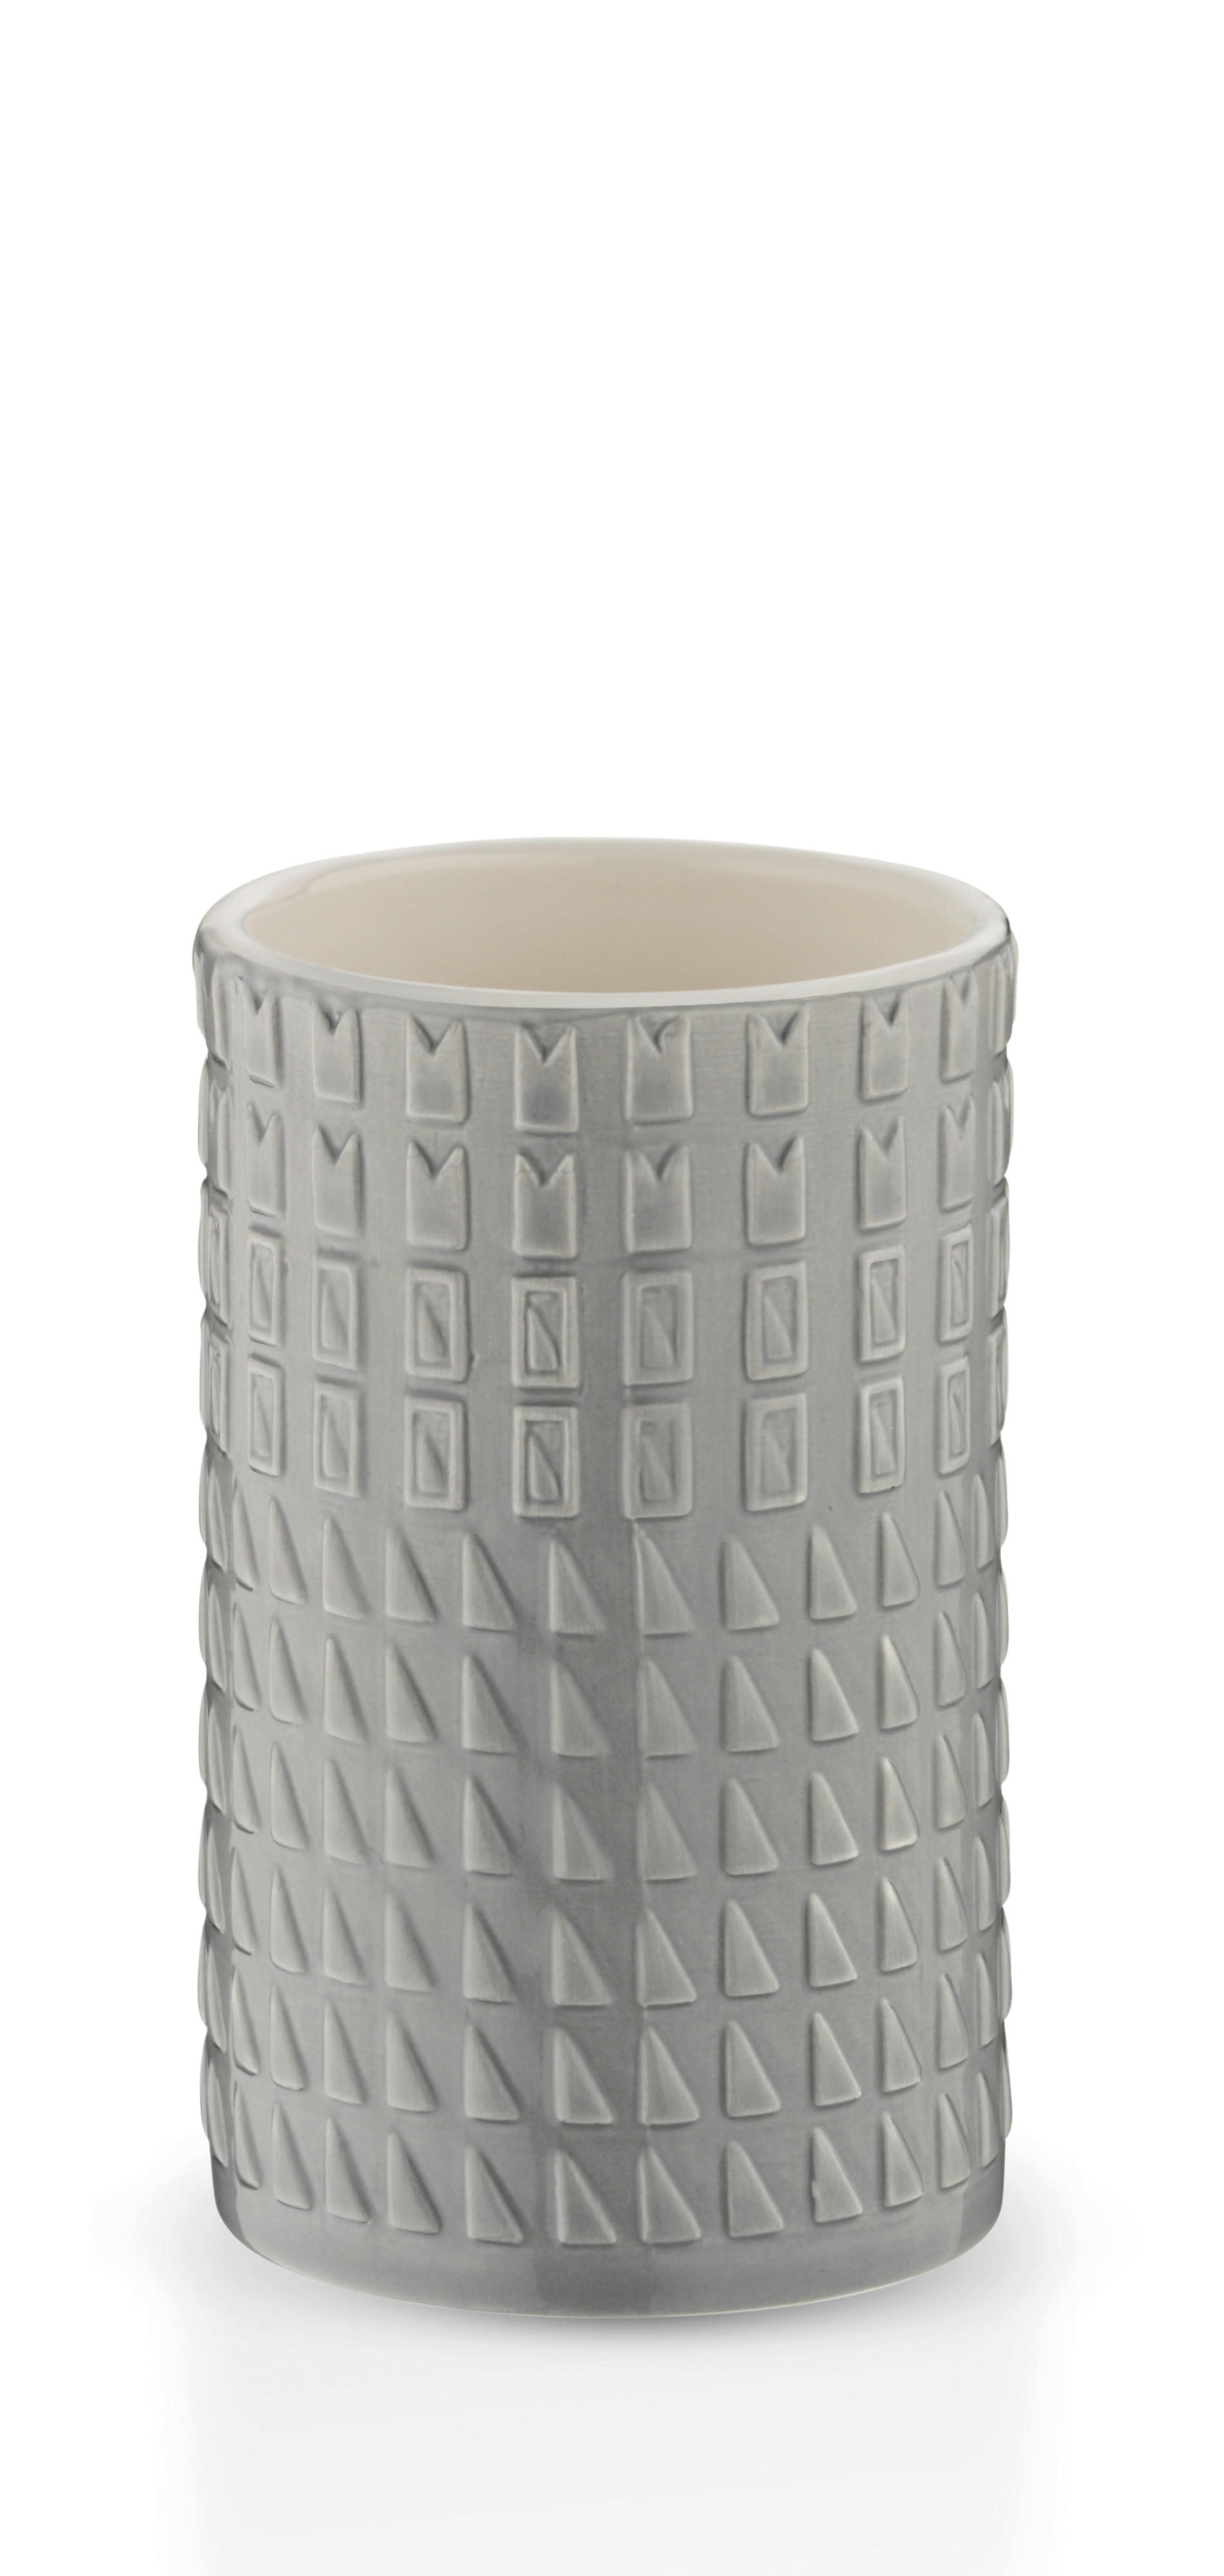 KUPATILSKA ČAŠA  svetlosiva  keramika  - svetlosiva, Konvencionalno, keramika (6,5/11cm) - Kela